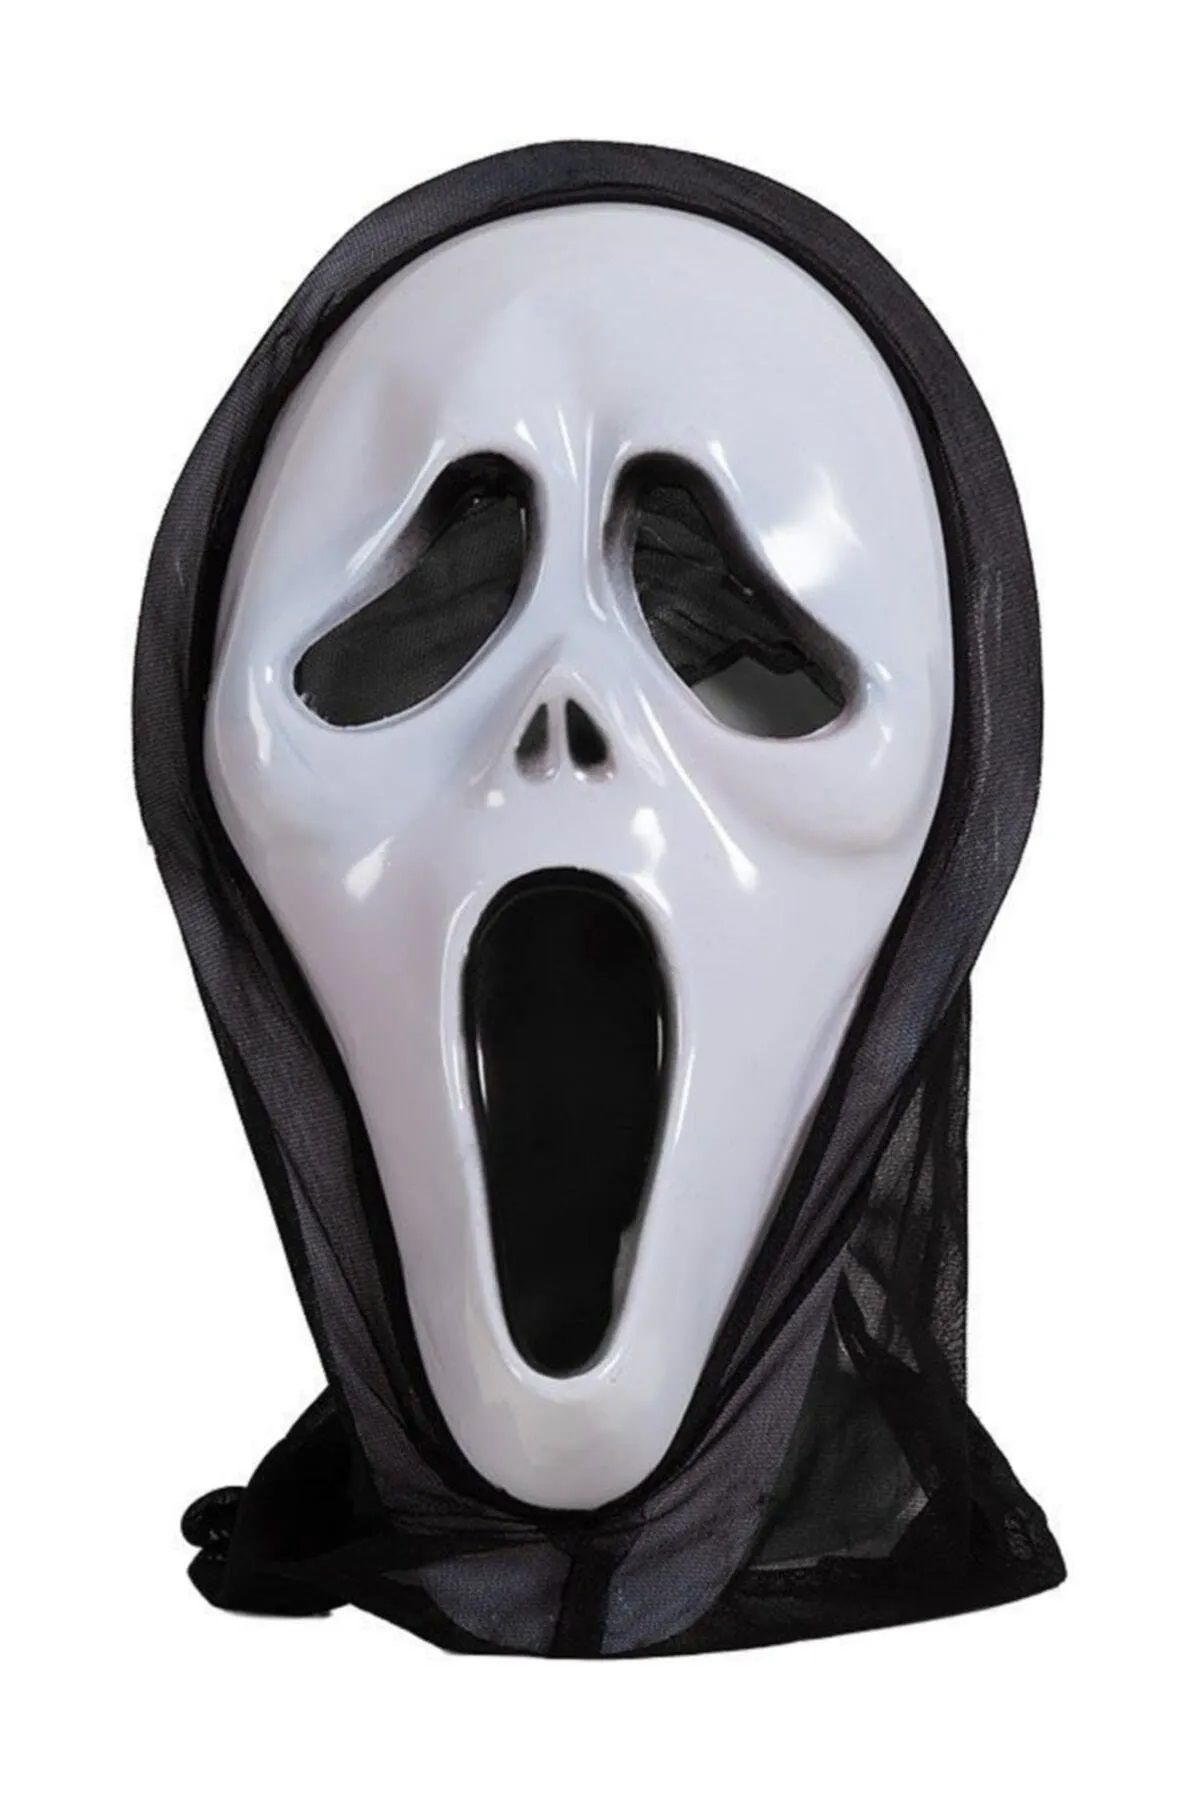 Mahi Max Çığlık Maskesi Hayalet Kapşon Şaka Maskesi Fear Scream Mask